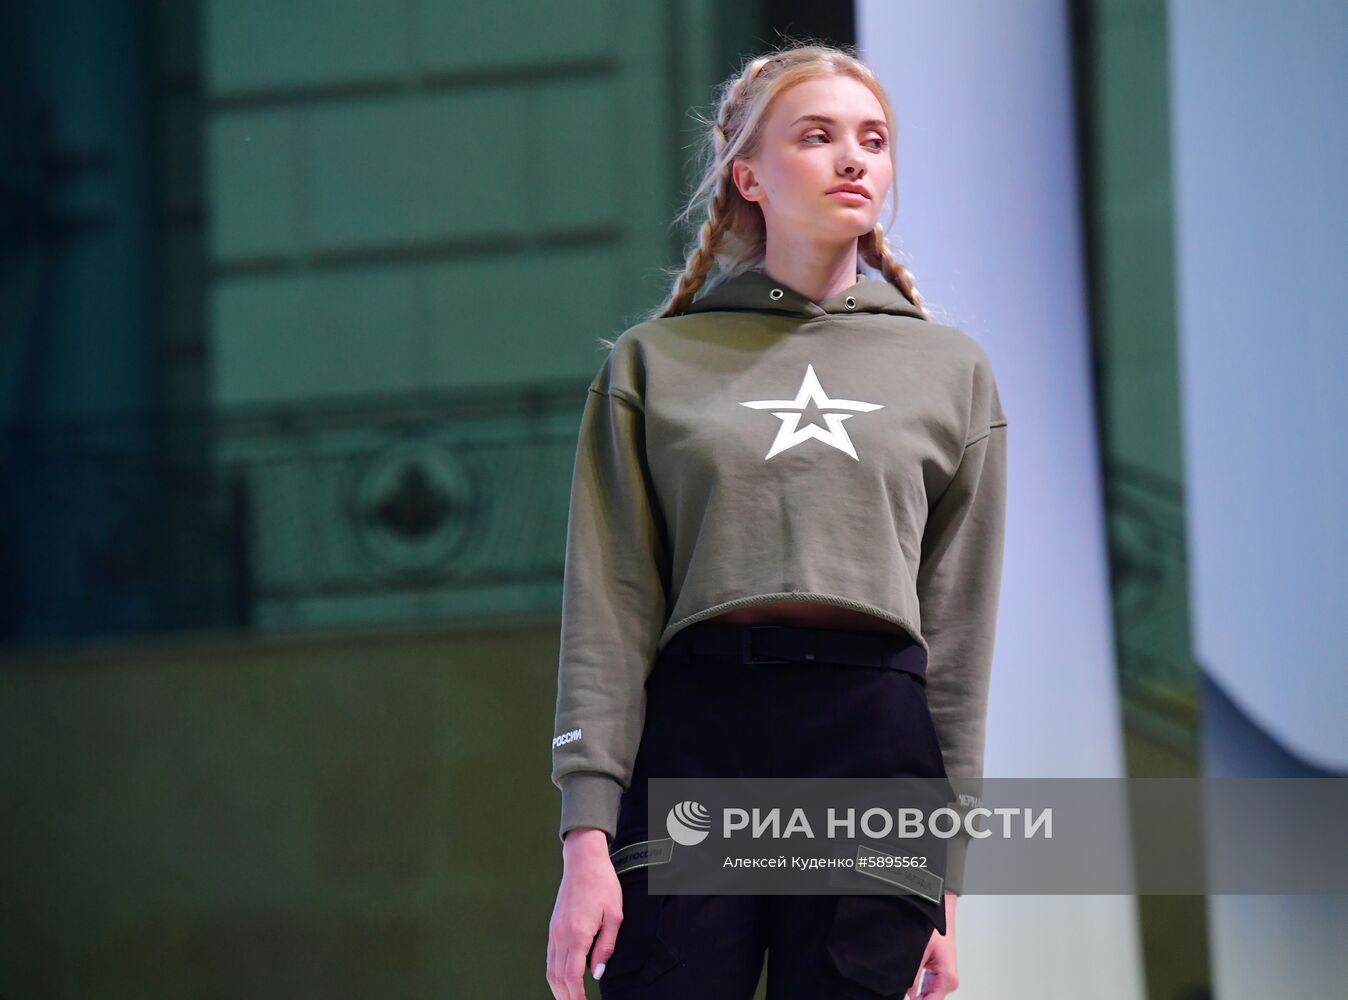 Black Star Wear и "Армия России" представили совместную коллекцию одежды